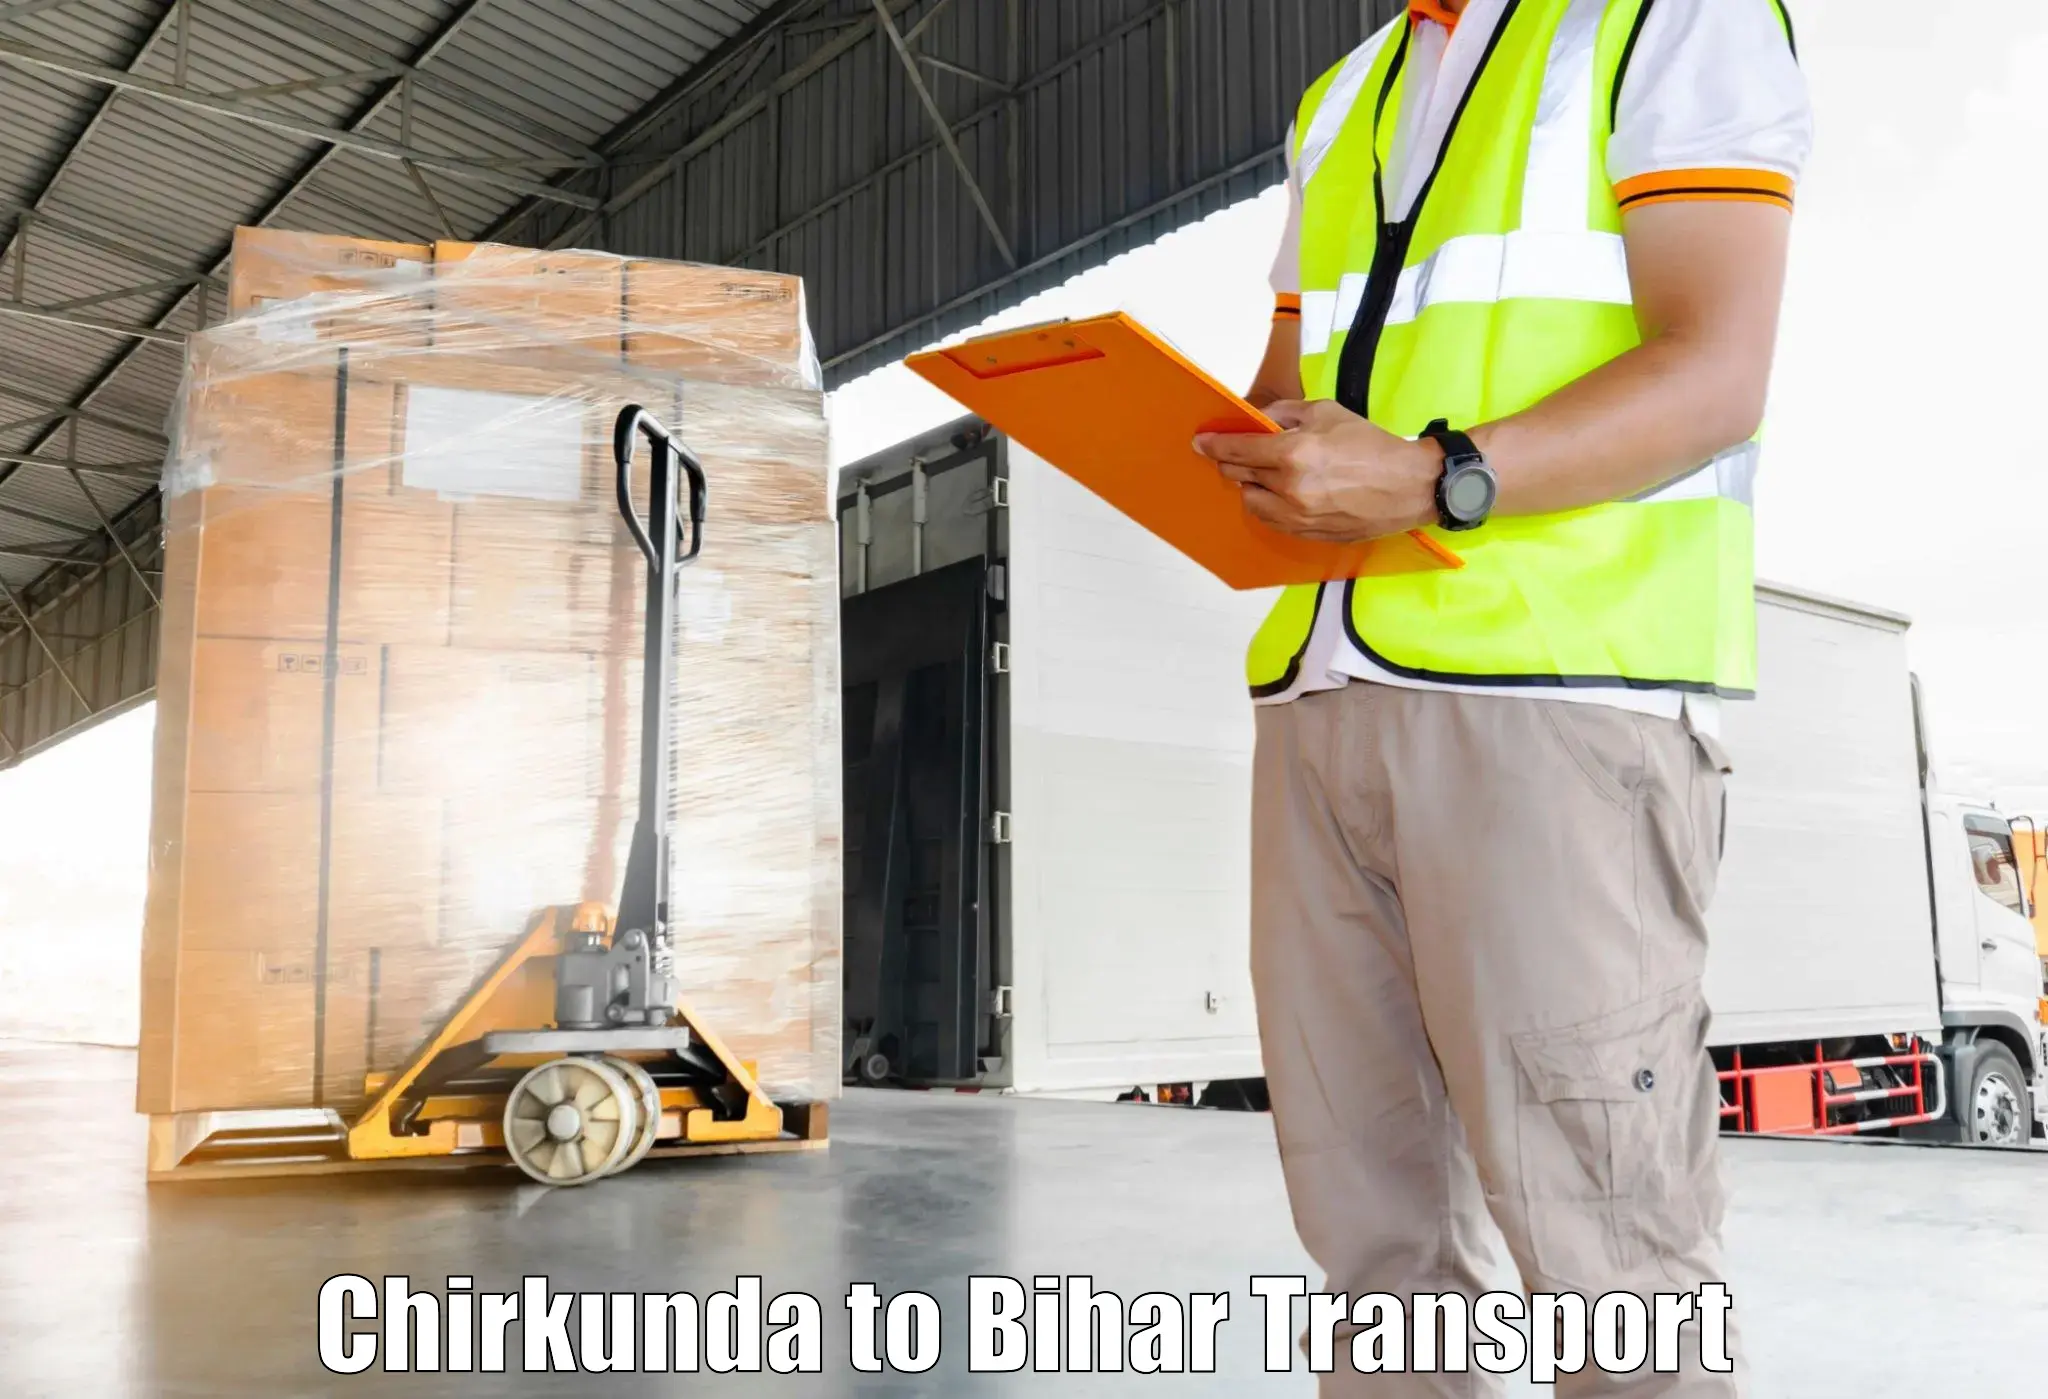 Daily transport service Chirkunda to Mohania